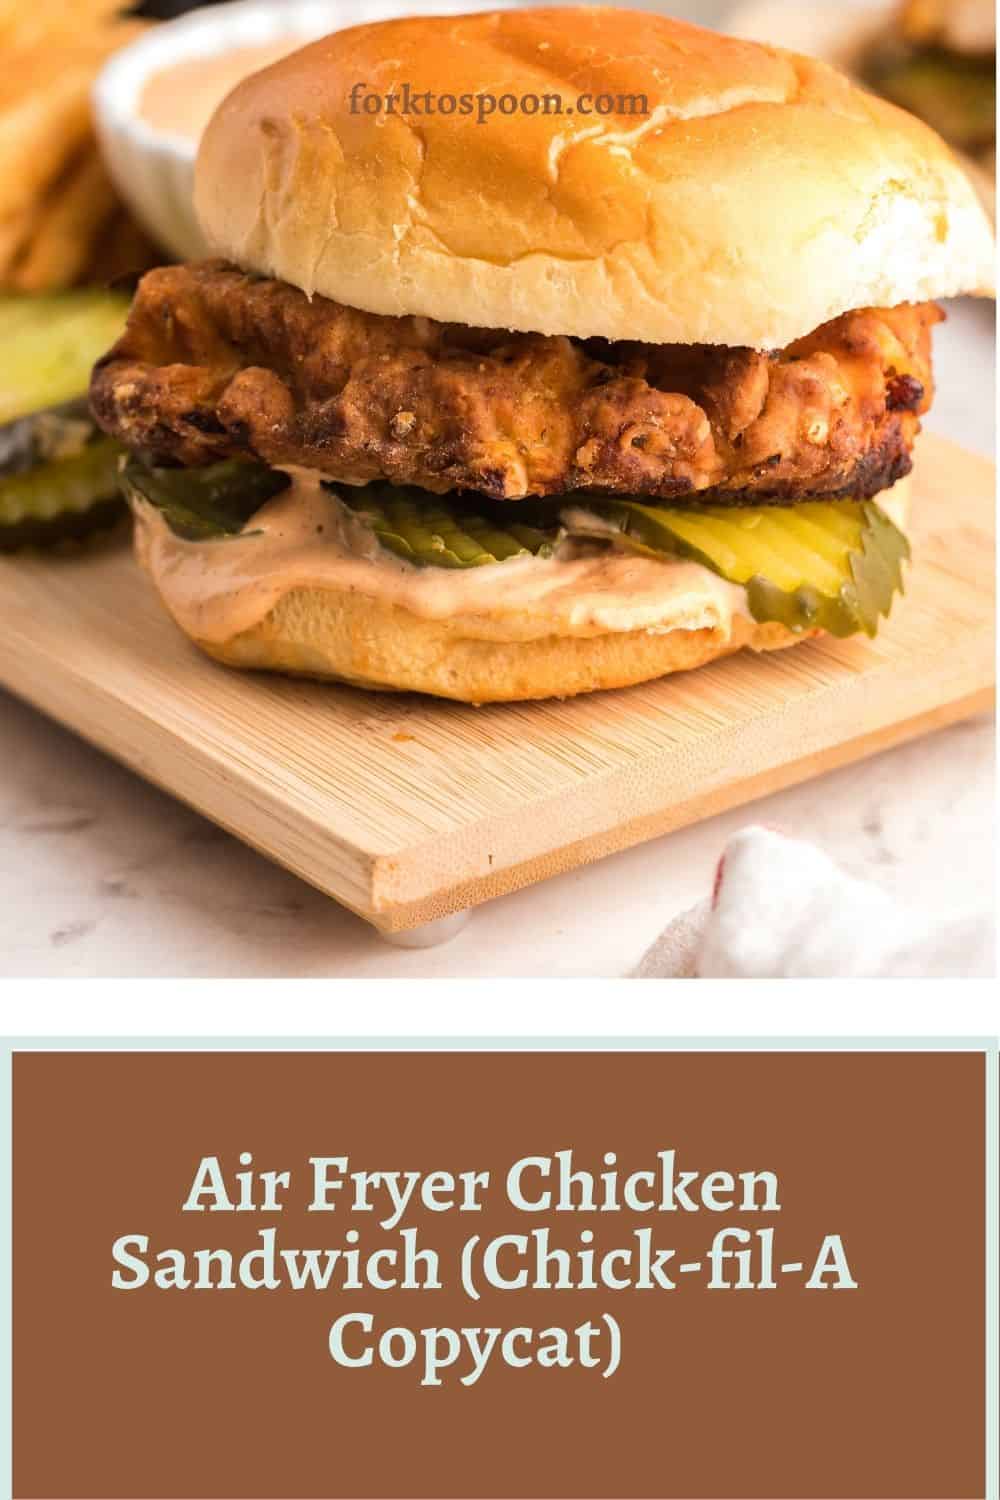 https://forktospoon.com/wp-content/uploads/2021/10/Air-Fryer-Chicken-Sandwich-Chick-fil-A-Copycat-7.jpg